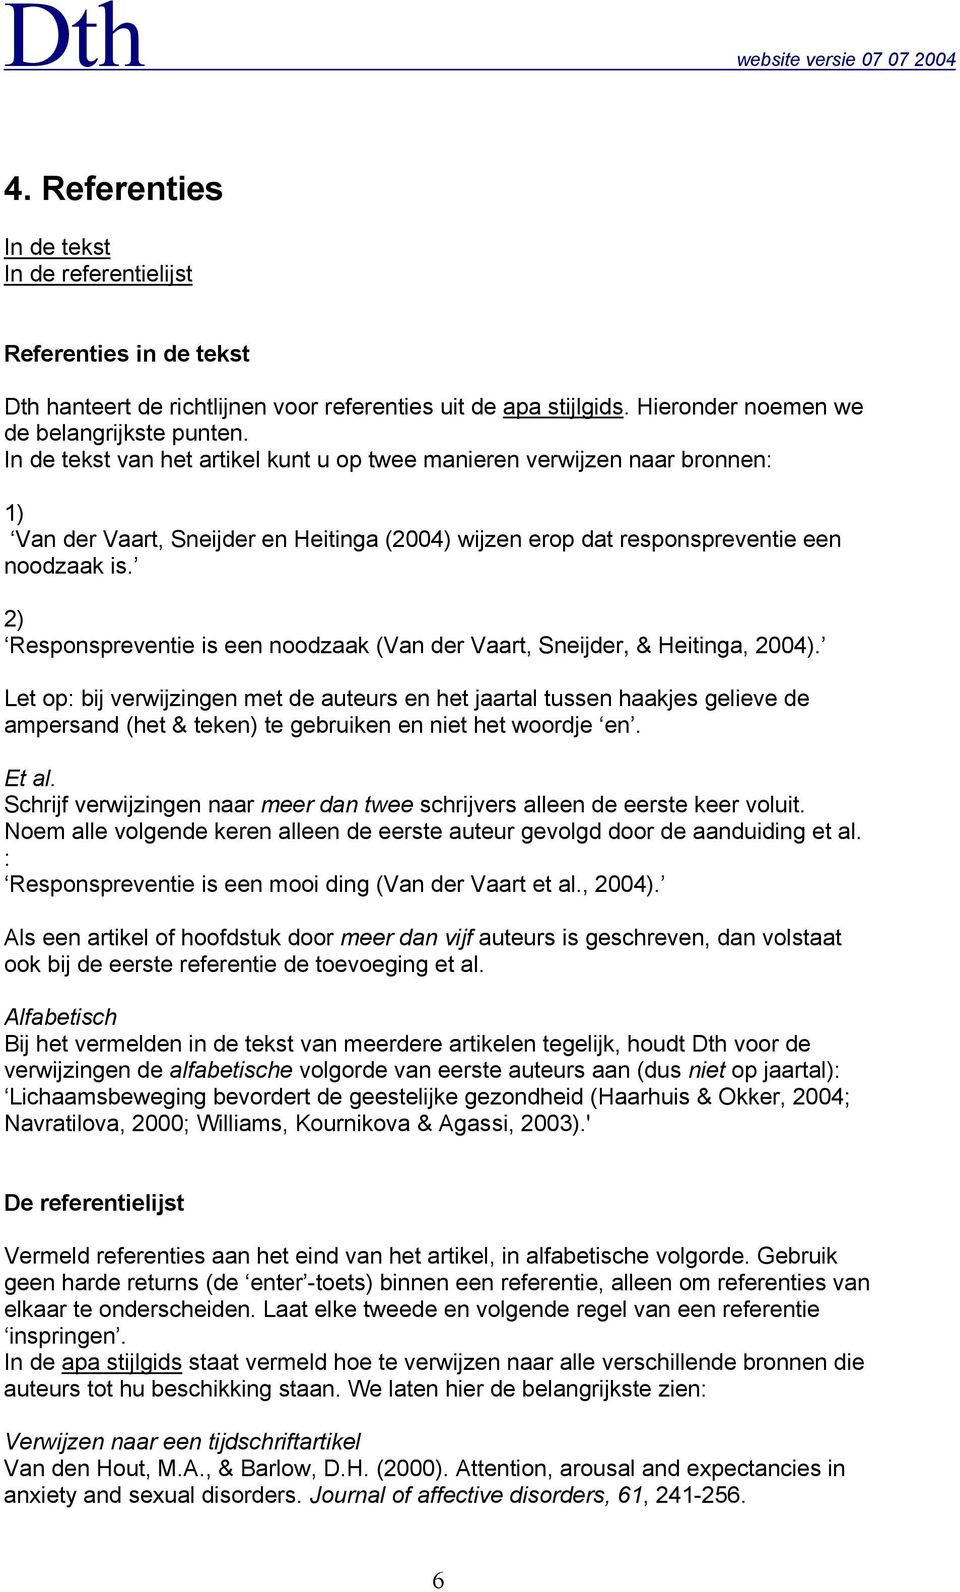 2) Responspreventie is een noodzaak (Van der Vaart, Sneijder, & Heitinga, 2004).